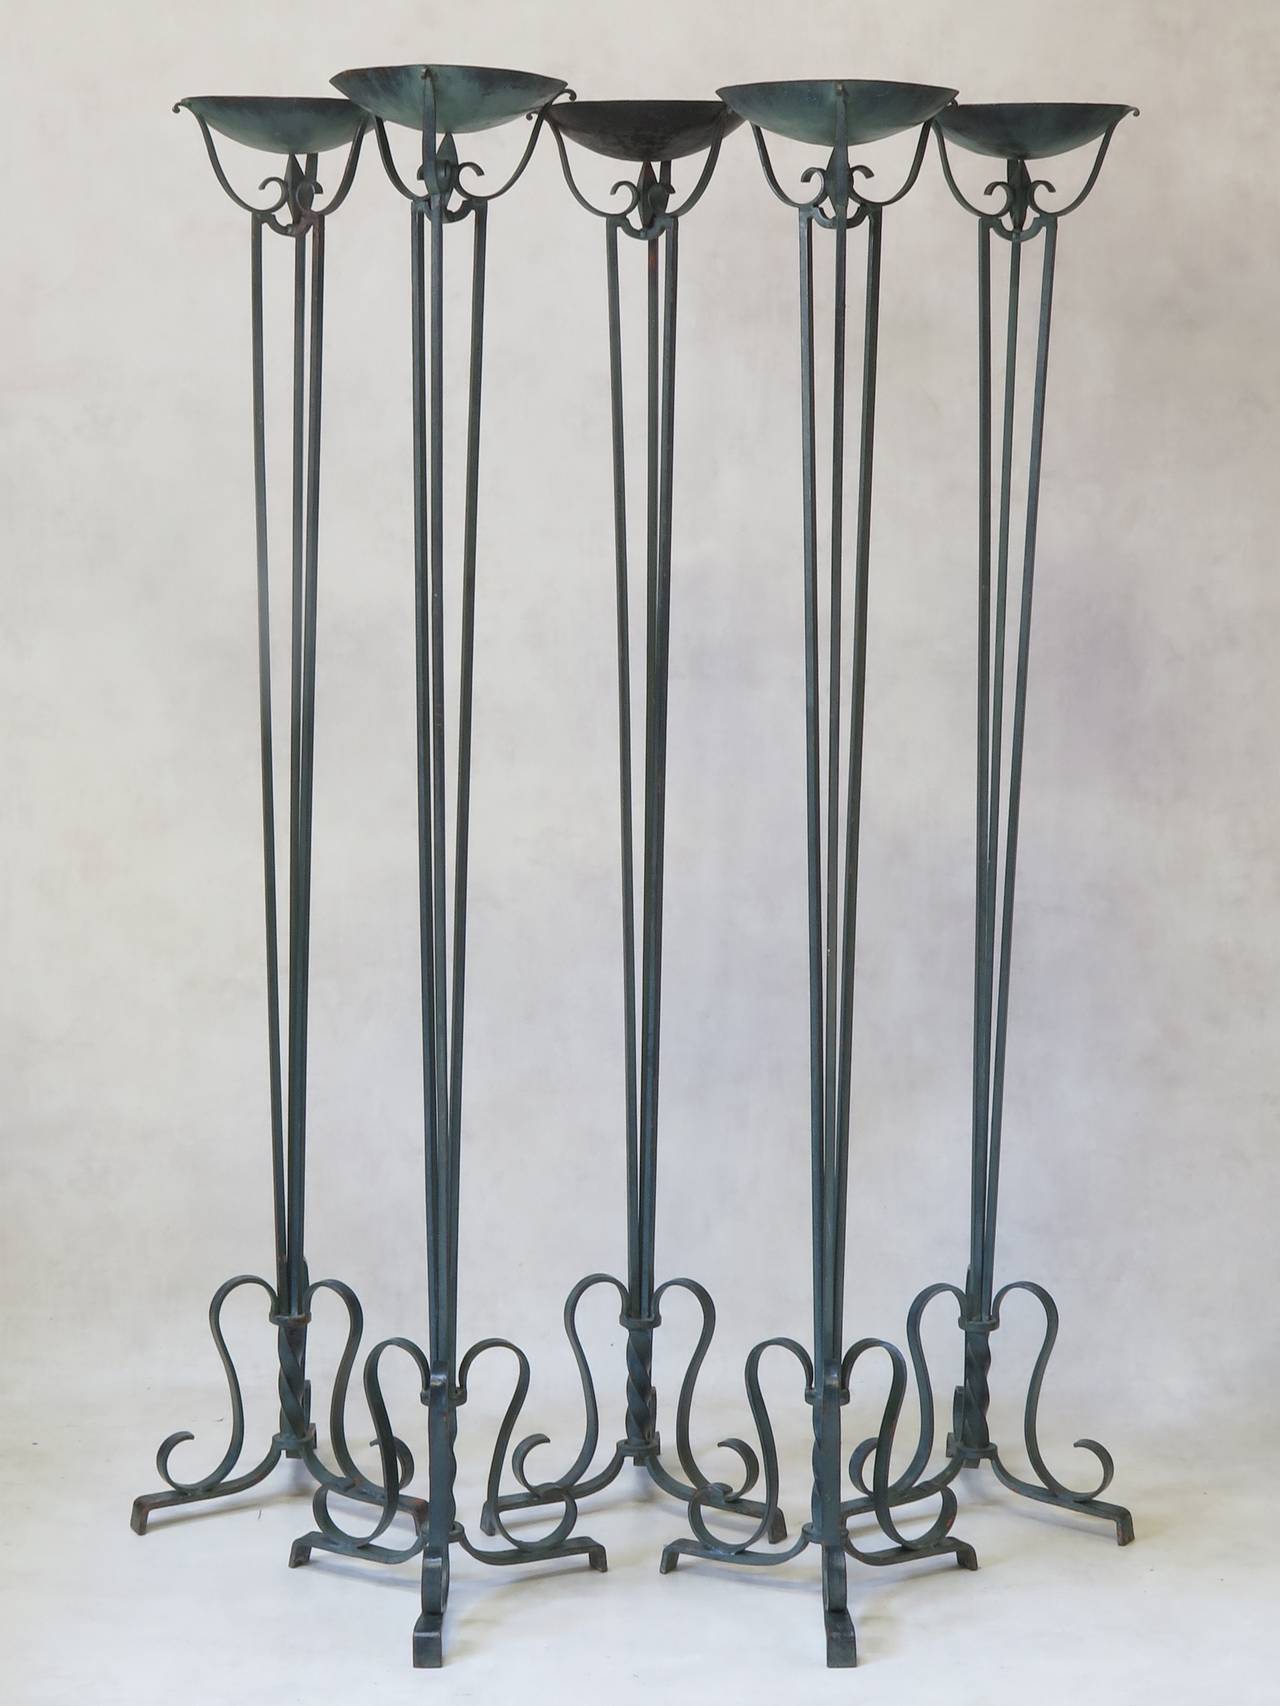 Eleganter Satz von fünf französischen Fackeln oder Kerzenhaltern im neoklassizistischen Art-Déco-Stil aus Schmiedeeisen.
Die Kuppel wird von einem langen, spitz zulaufenden Schaft getragen, der aus drei Eisenstangen besteht. Dreibeinige